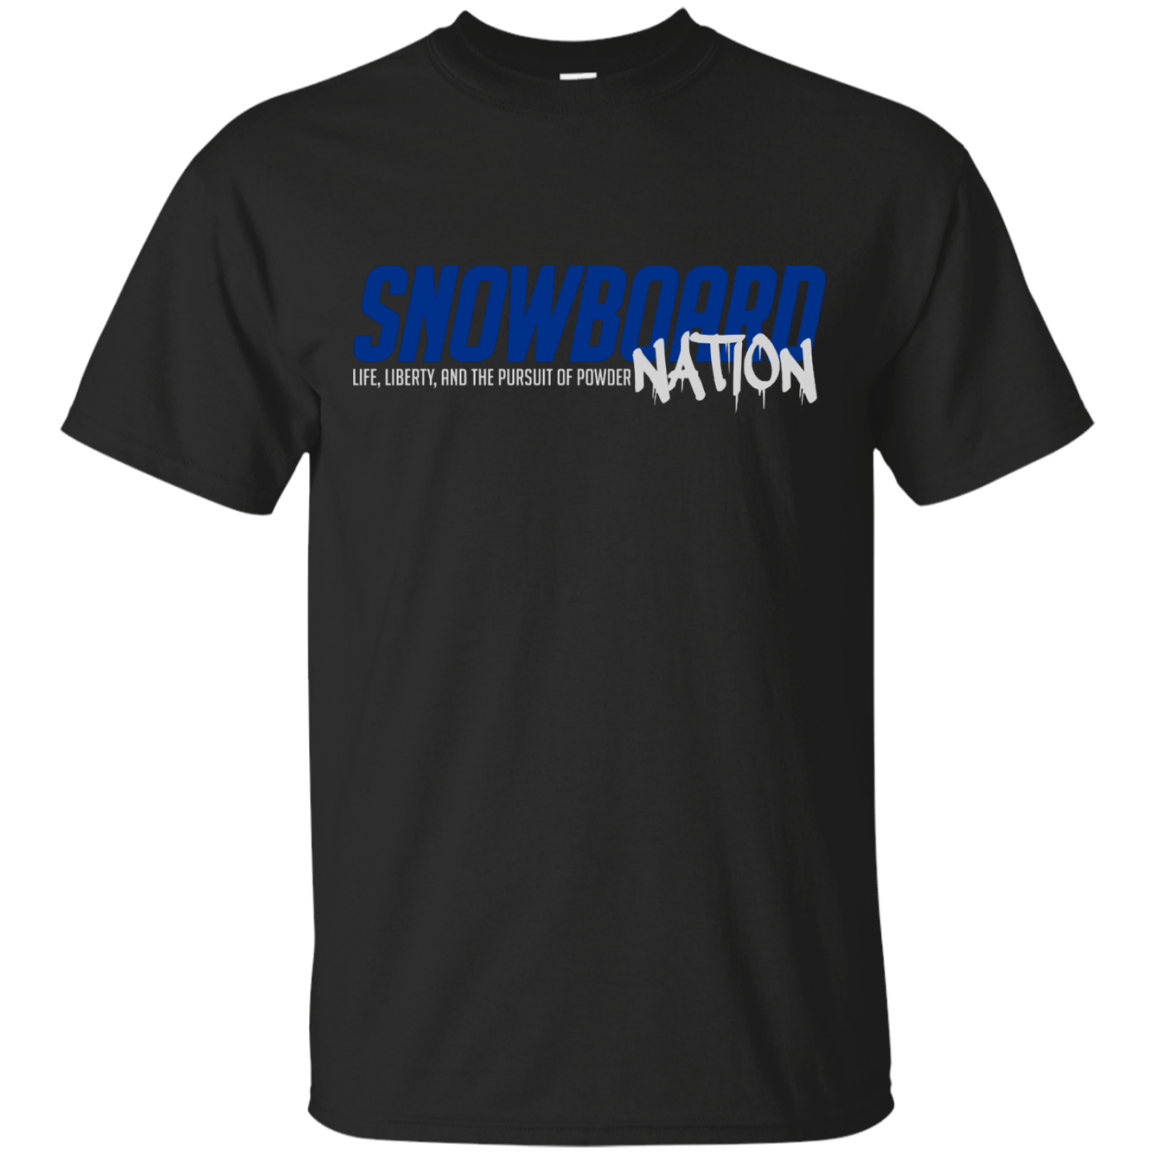 Snowboard Nation (Blue) Tees - Powderaddicts